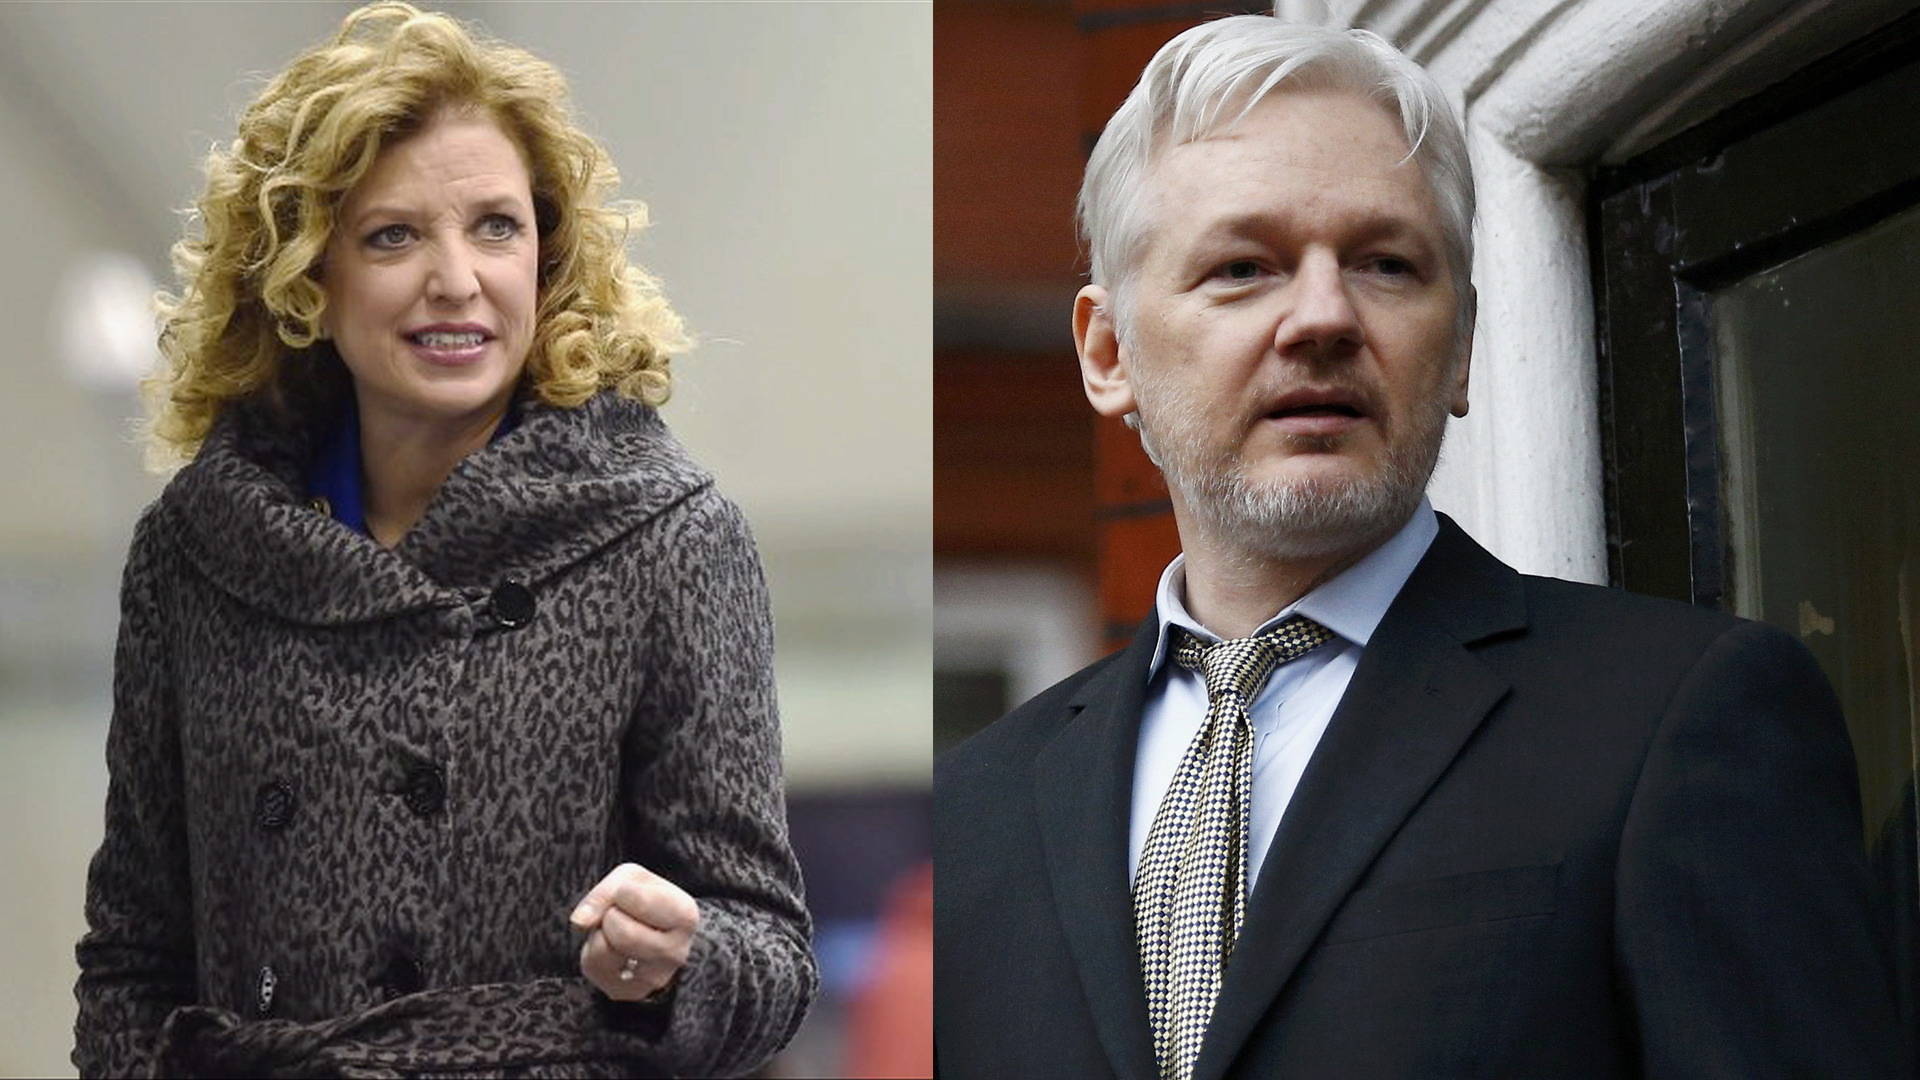 EXCLUSIVE: WikiLeaks' Julian Assange on Releasing DNC 